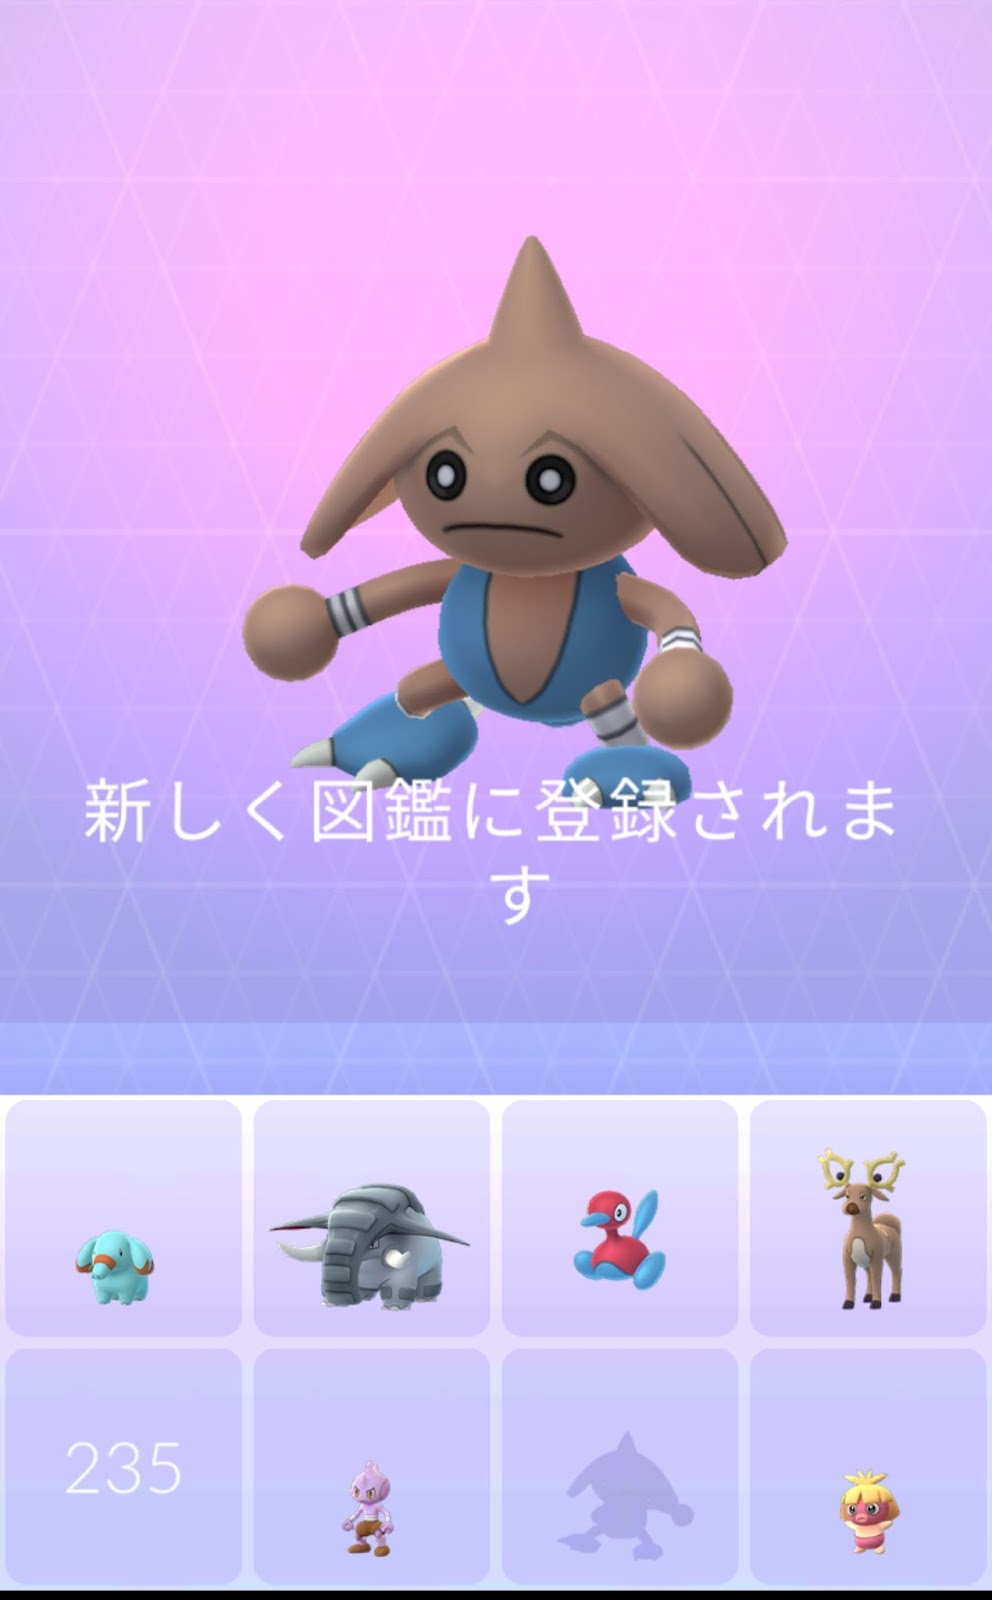 ポケモンgo日記 Pokemon Go Diary In Japan バルキー は サワムラー エビワラー カポエラー のいずれかに進化 バルキー を カポエラー に進化させてみた